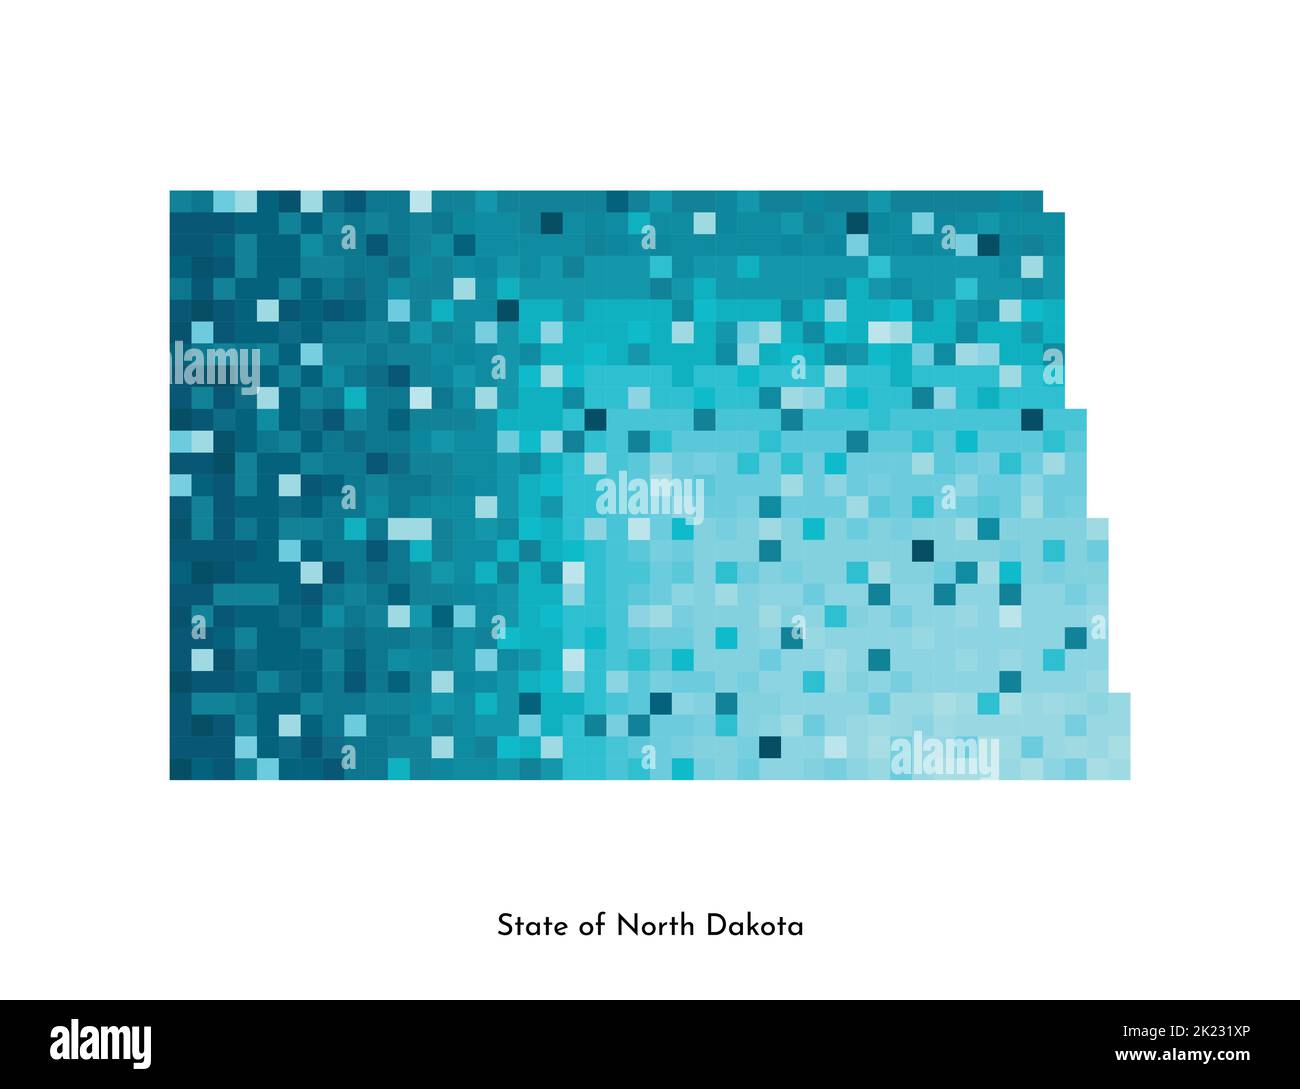 Vektor isolierte geometrische Illustration mit eisigen blauen Bereich der USA - State of North Dakota Karte. Pixel-Art-Stil für NFT-Vorlage. Schlichtes buntes Logo w Stock Vektor